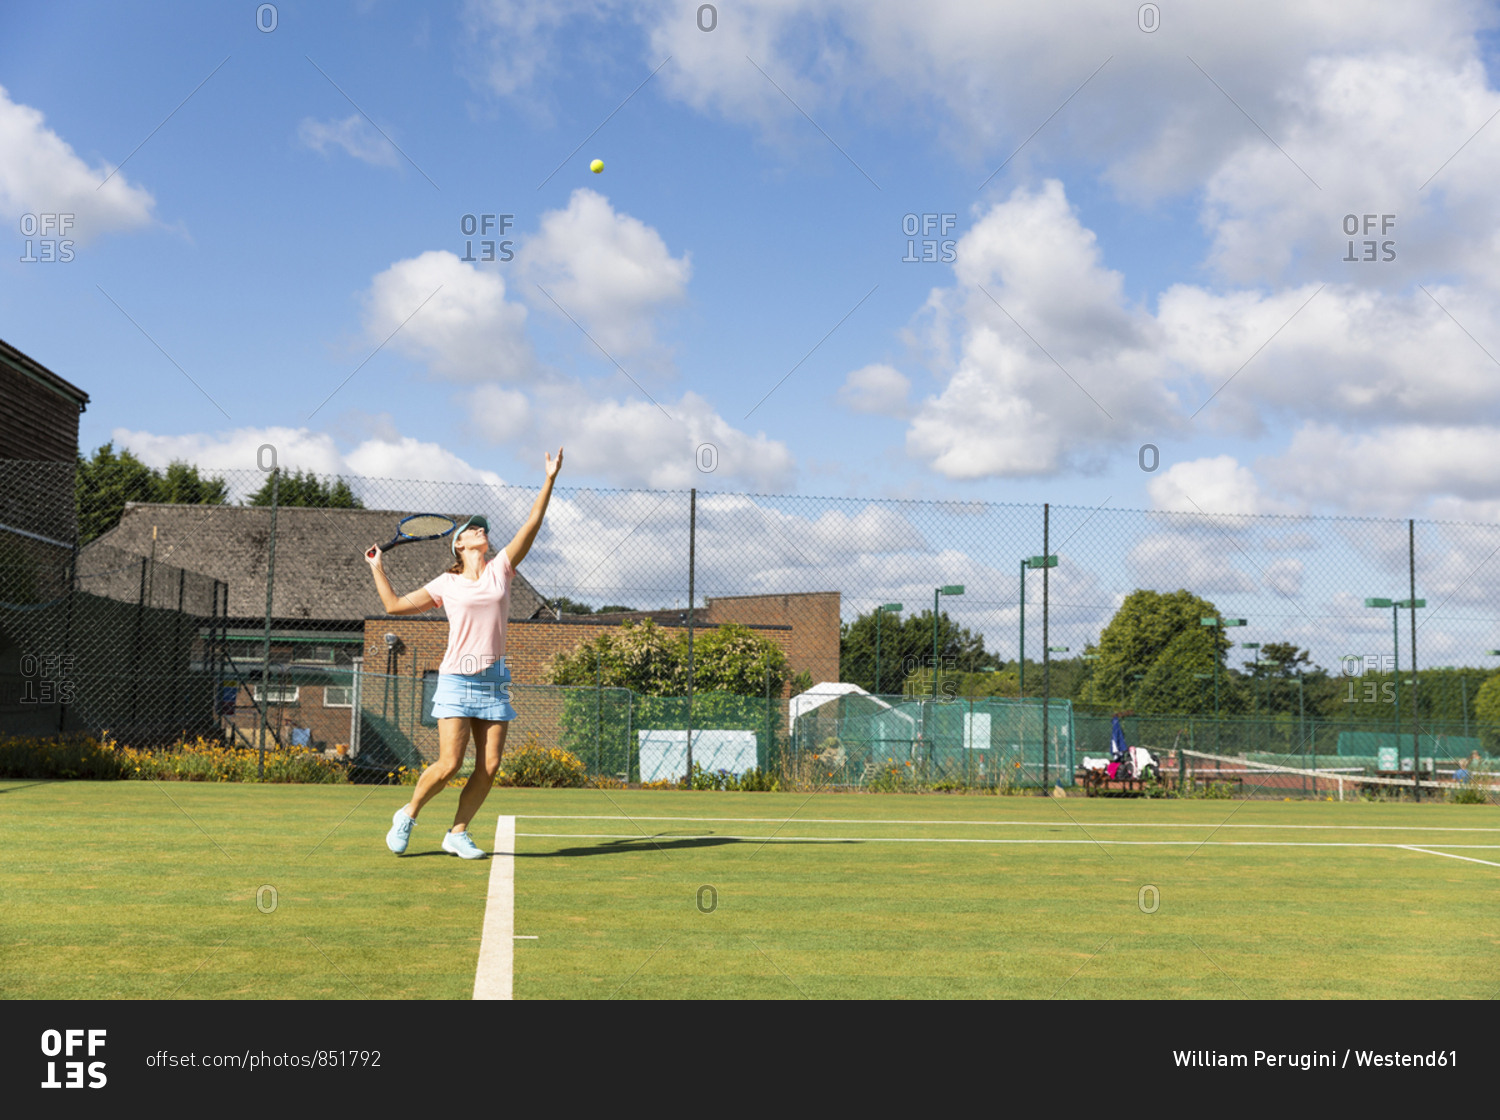 Mature woman serving during a tennis match on grass court